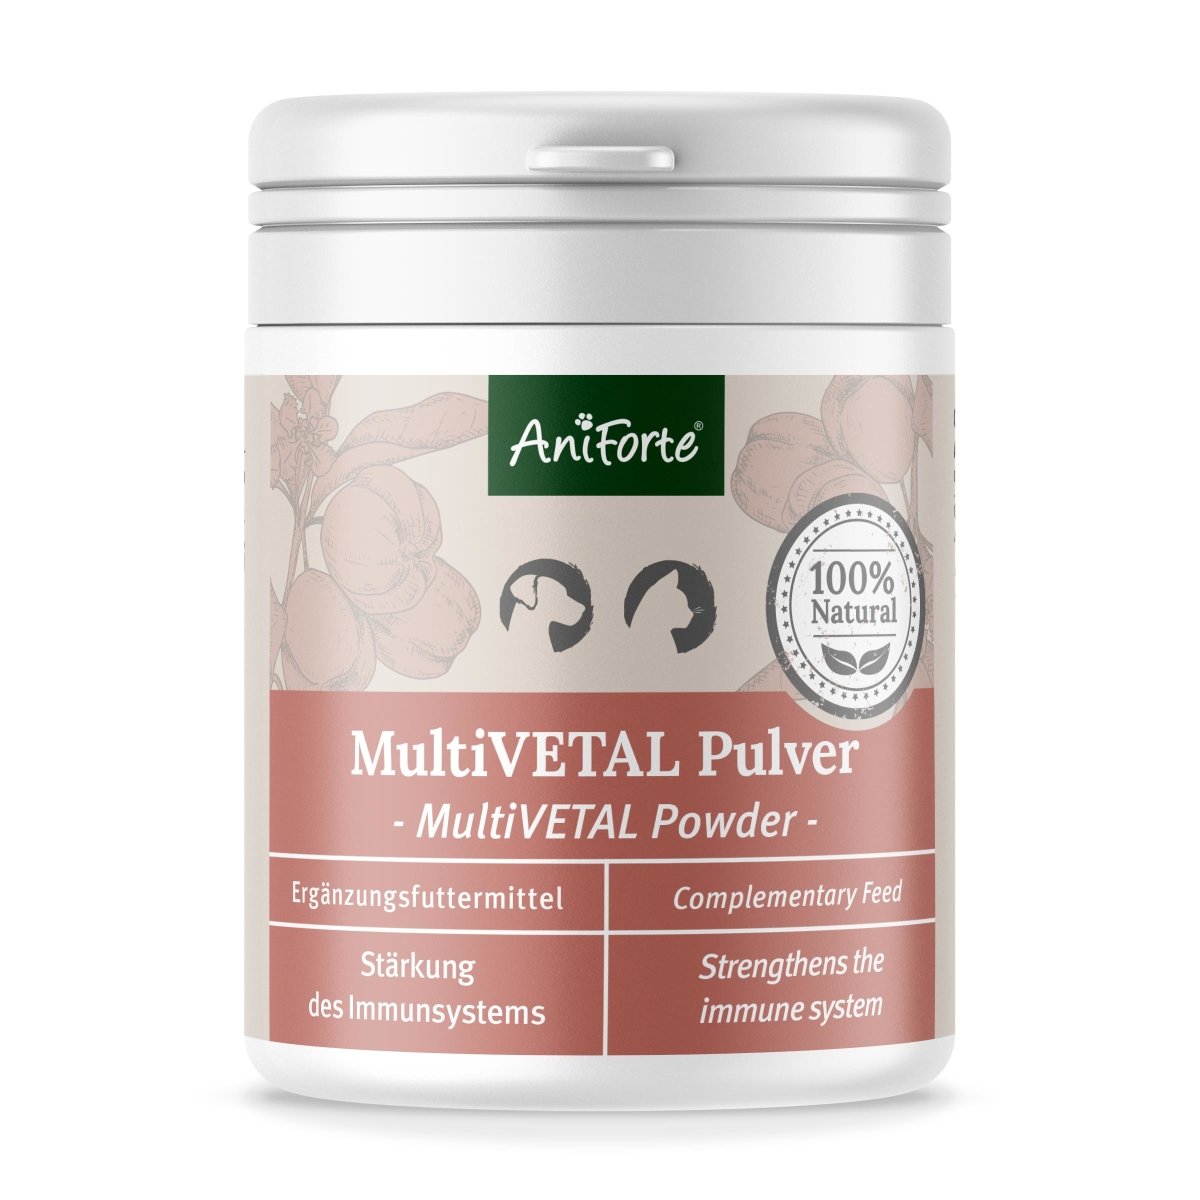 MultiVETAL Pulver - AniForte